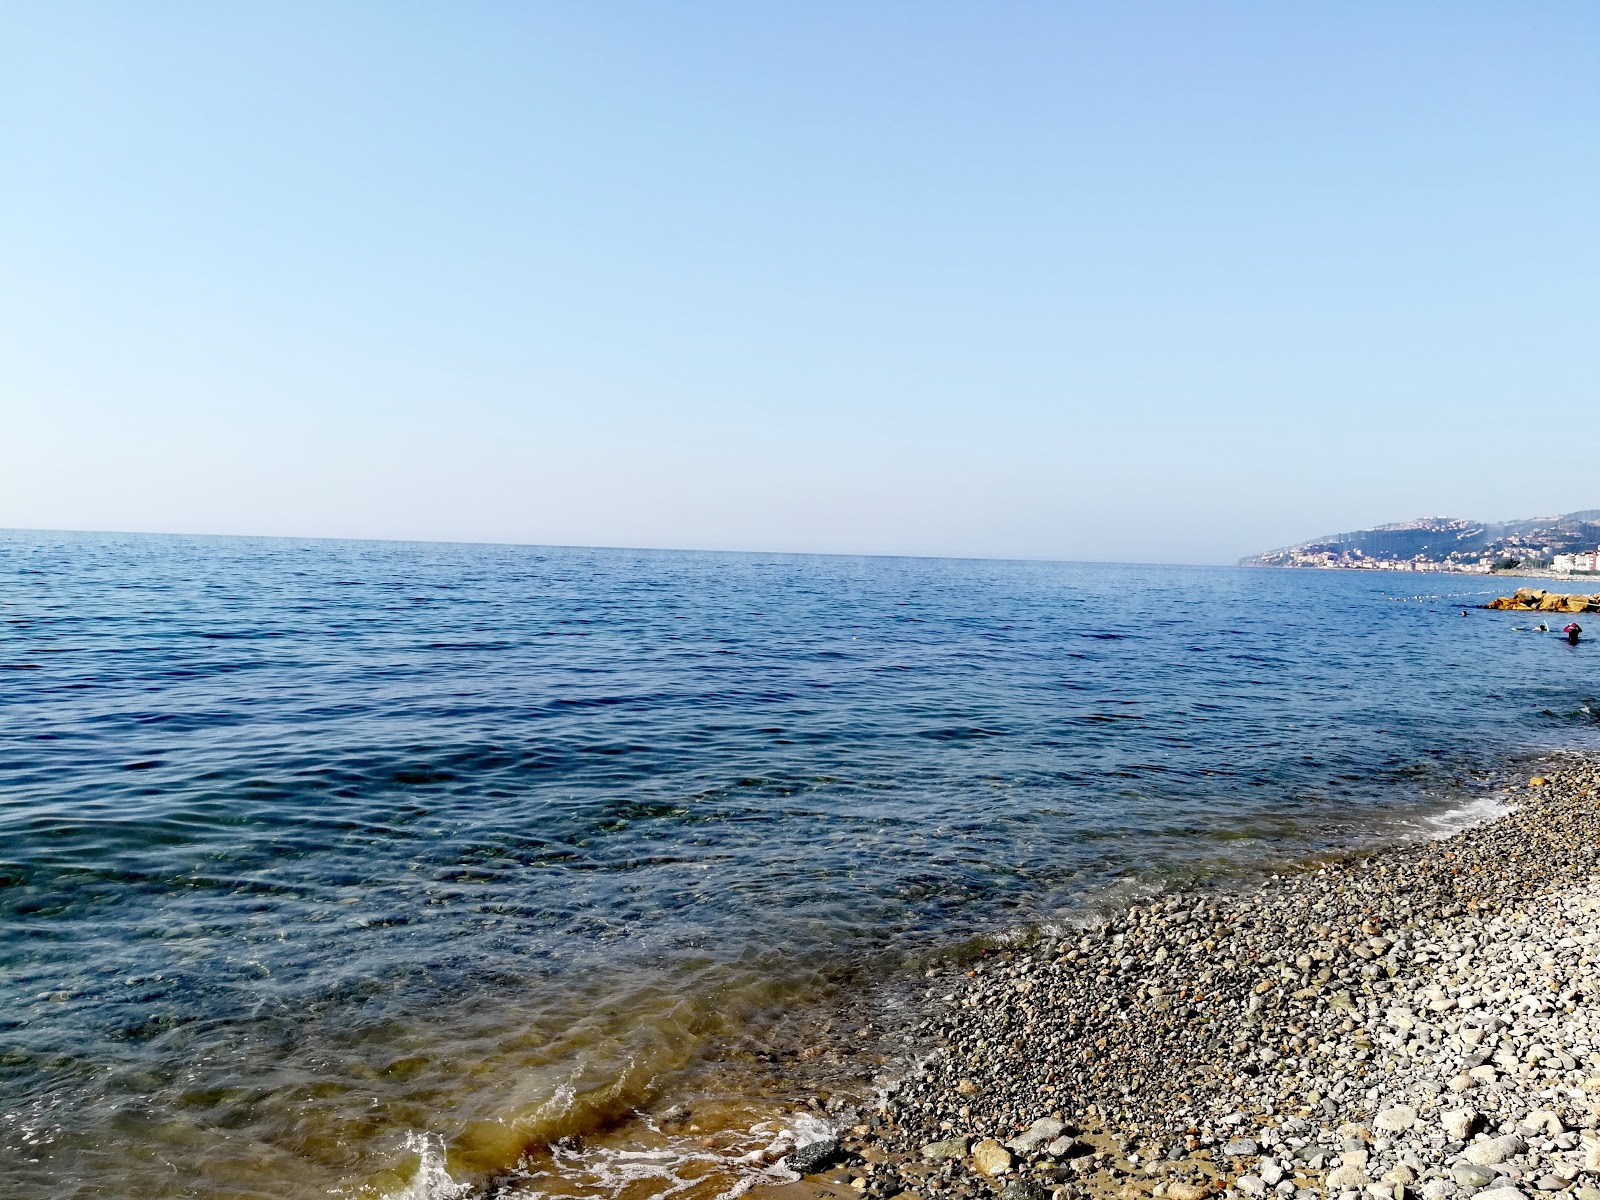 Fotografija Deniz Yildizi beach priljubljeno mesto med poznavalci sprostitve